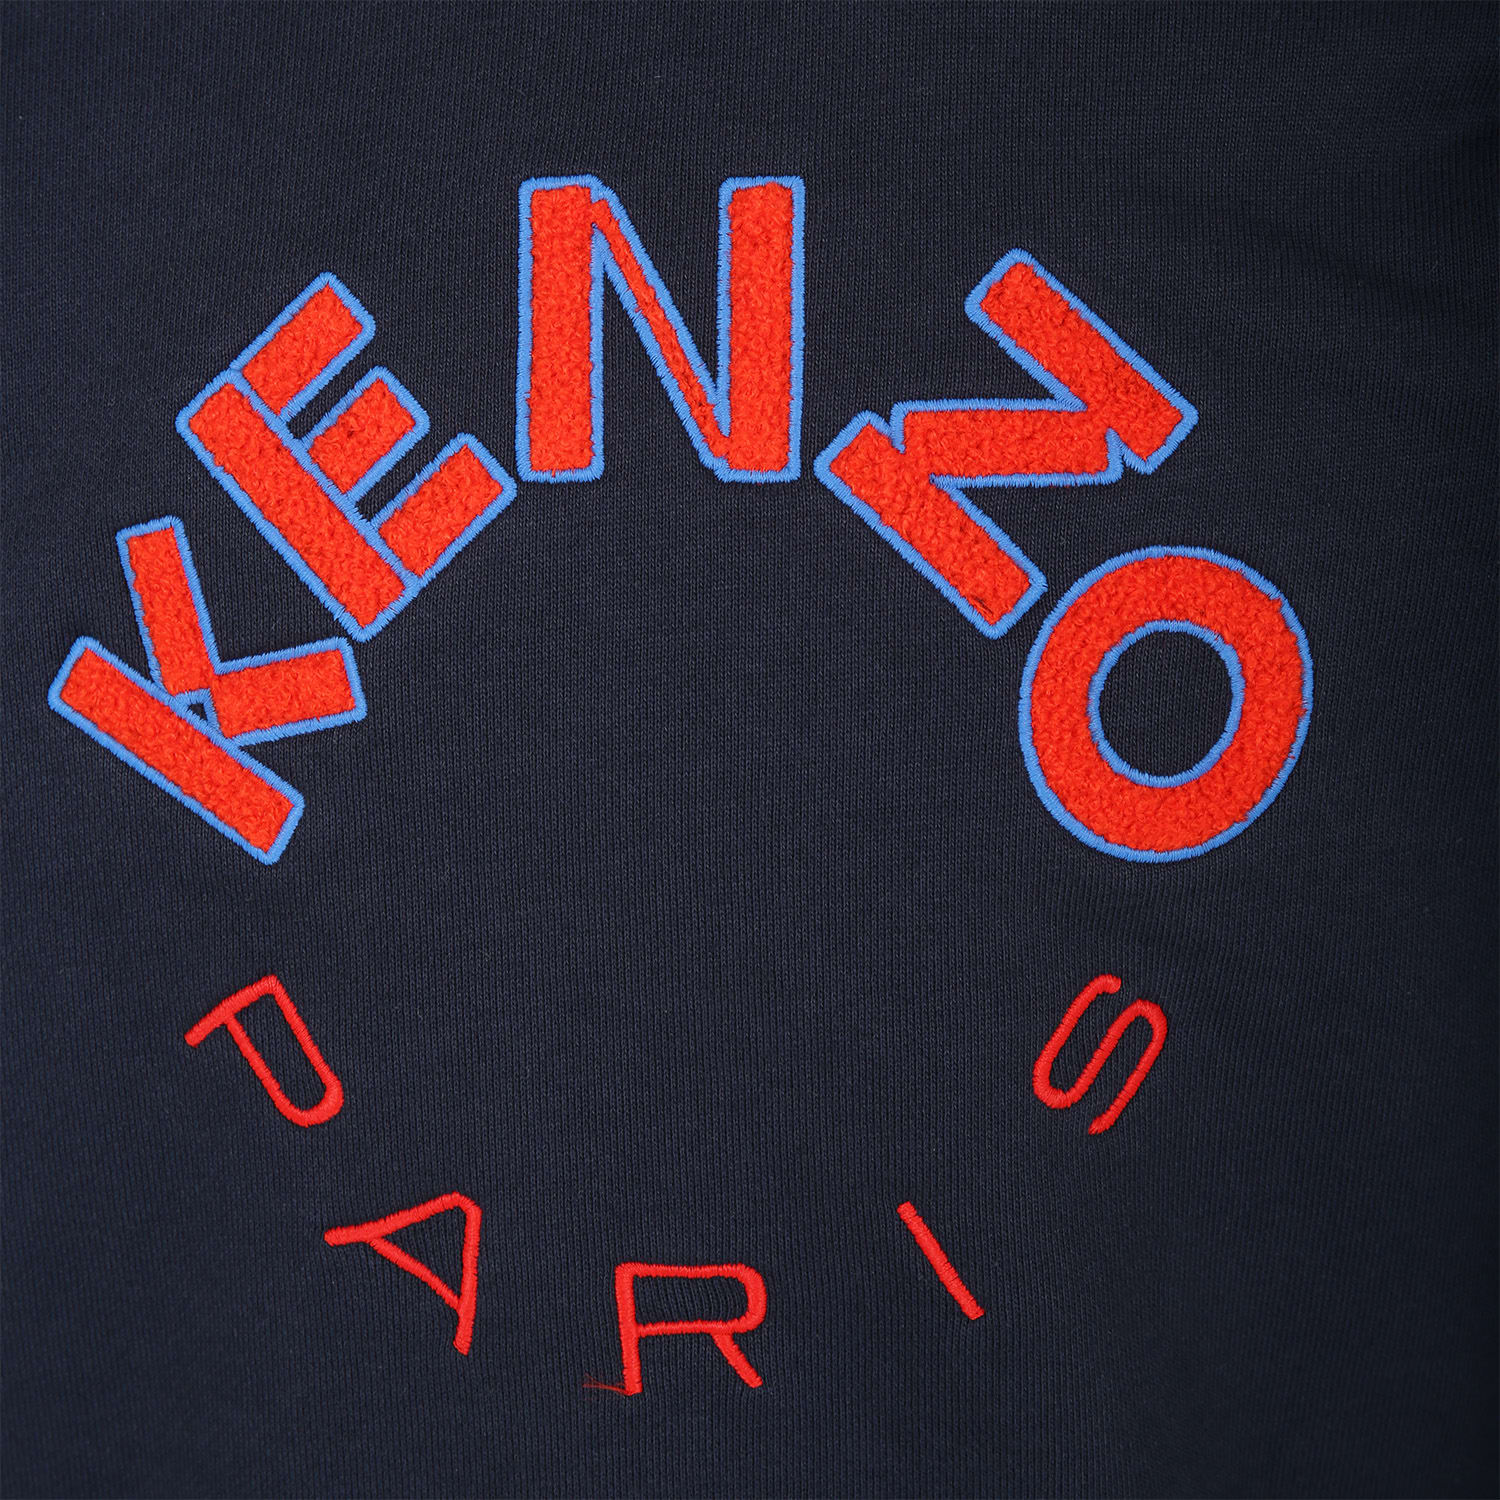 Shop Kenzo Blue Sweatshirt For Boy With Logo In A Marine